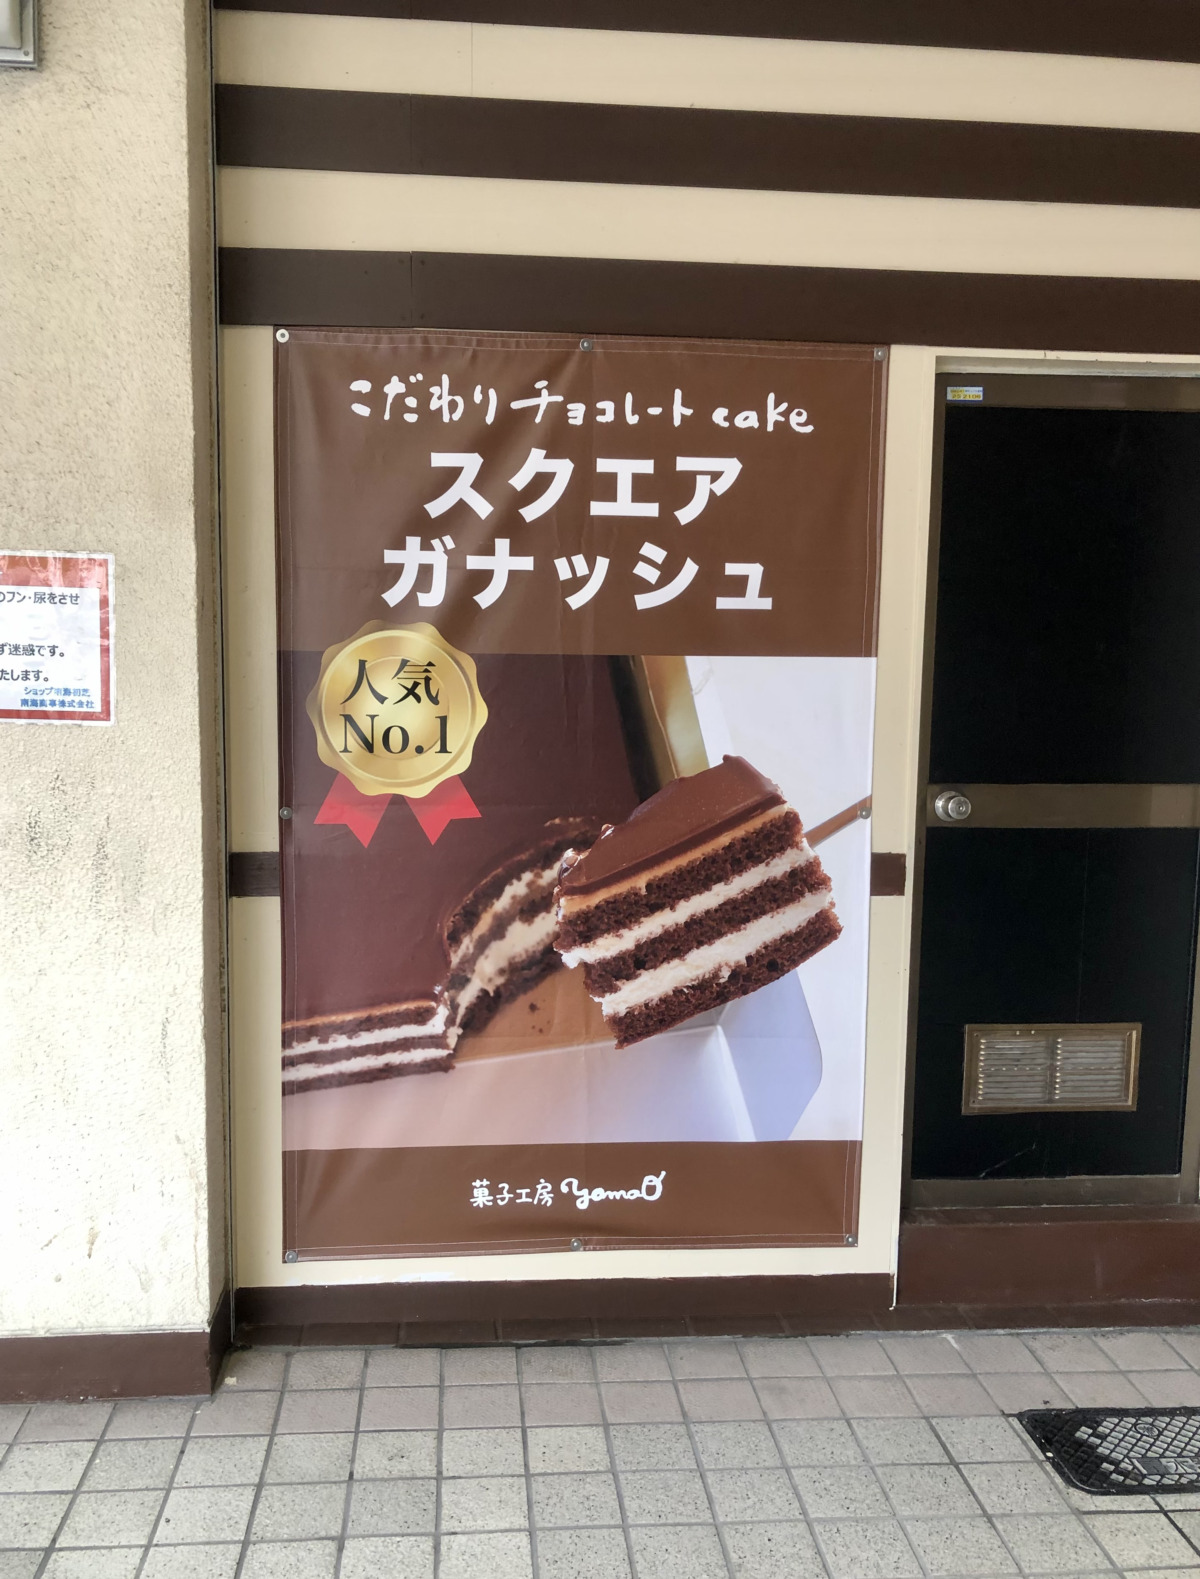 21 2 10オープン 大人気のガナッシュケーキを堺で購入できるようになったよ 菓子工房yamaoガナッシュ初芝店 が堺区 初芝にオープンしました さかにゅー